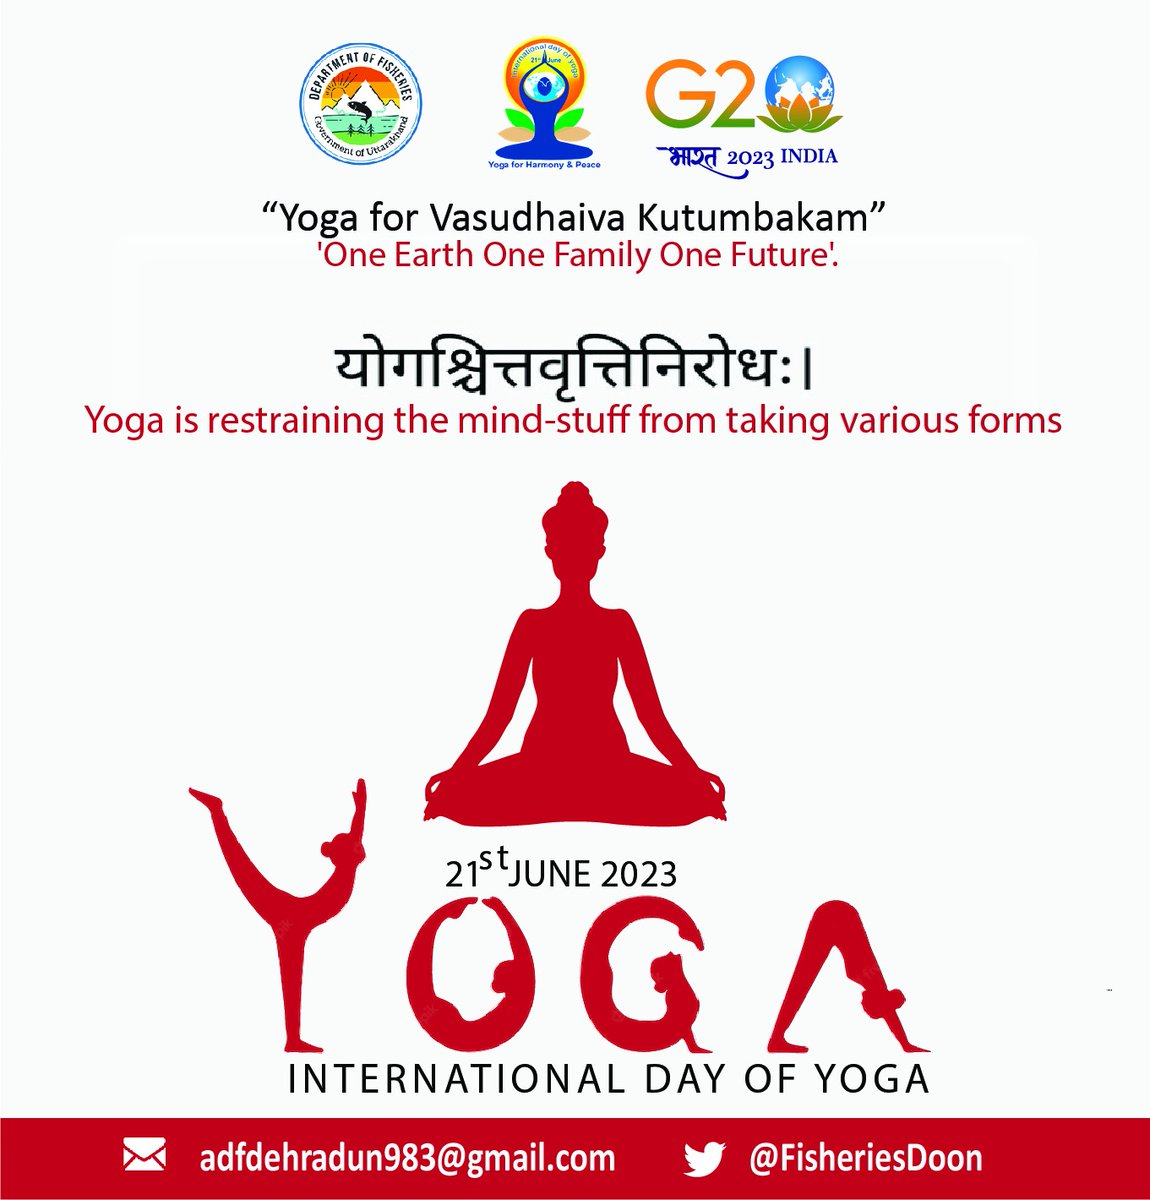 #internationalyogaday #health #india #fitnessmotivation #yoga #peace #healthylifestyle #wellness #meditation #staysafe #namaste #yogi #yogainspiration #yogalife #stayhealthy #yogapractice#asana #healthylifestyle #yogaforlife #UN#narendramodi#vasudhaivakutumbakam#haraanganyoga